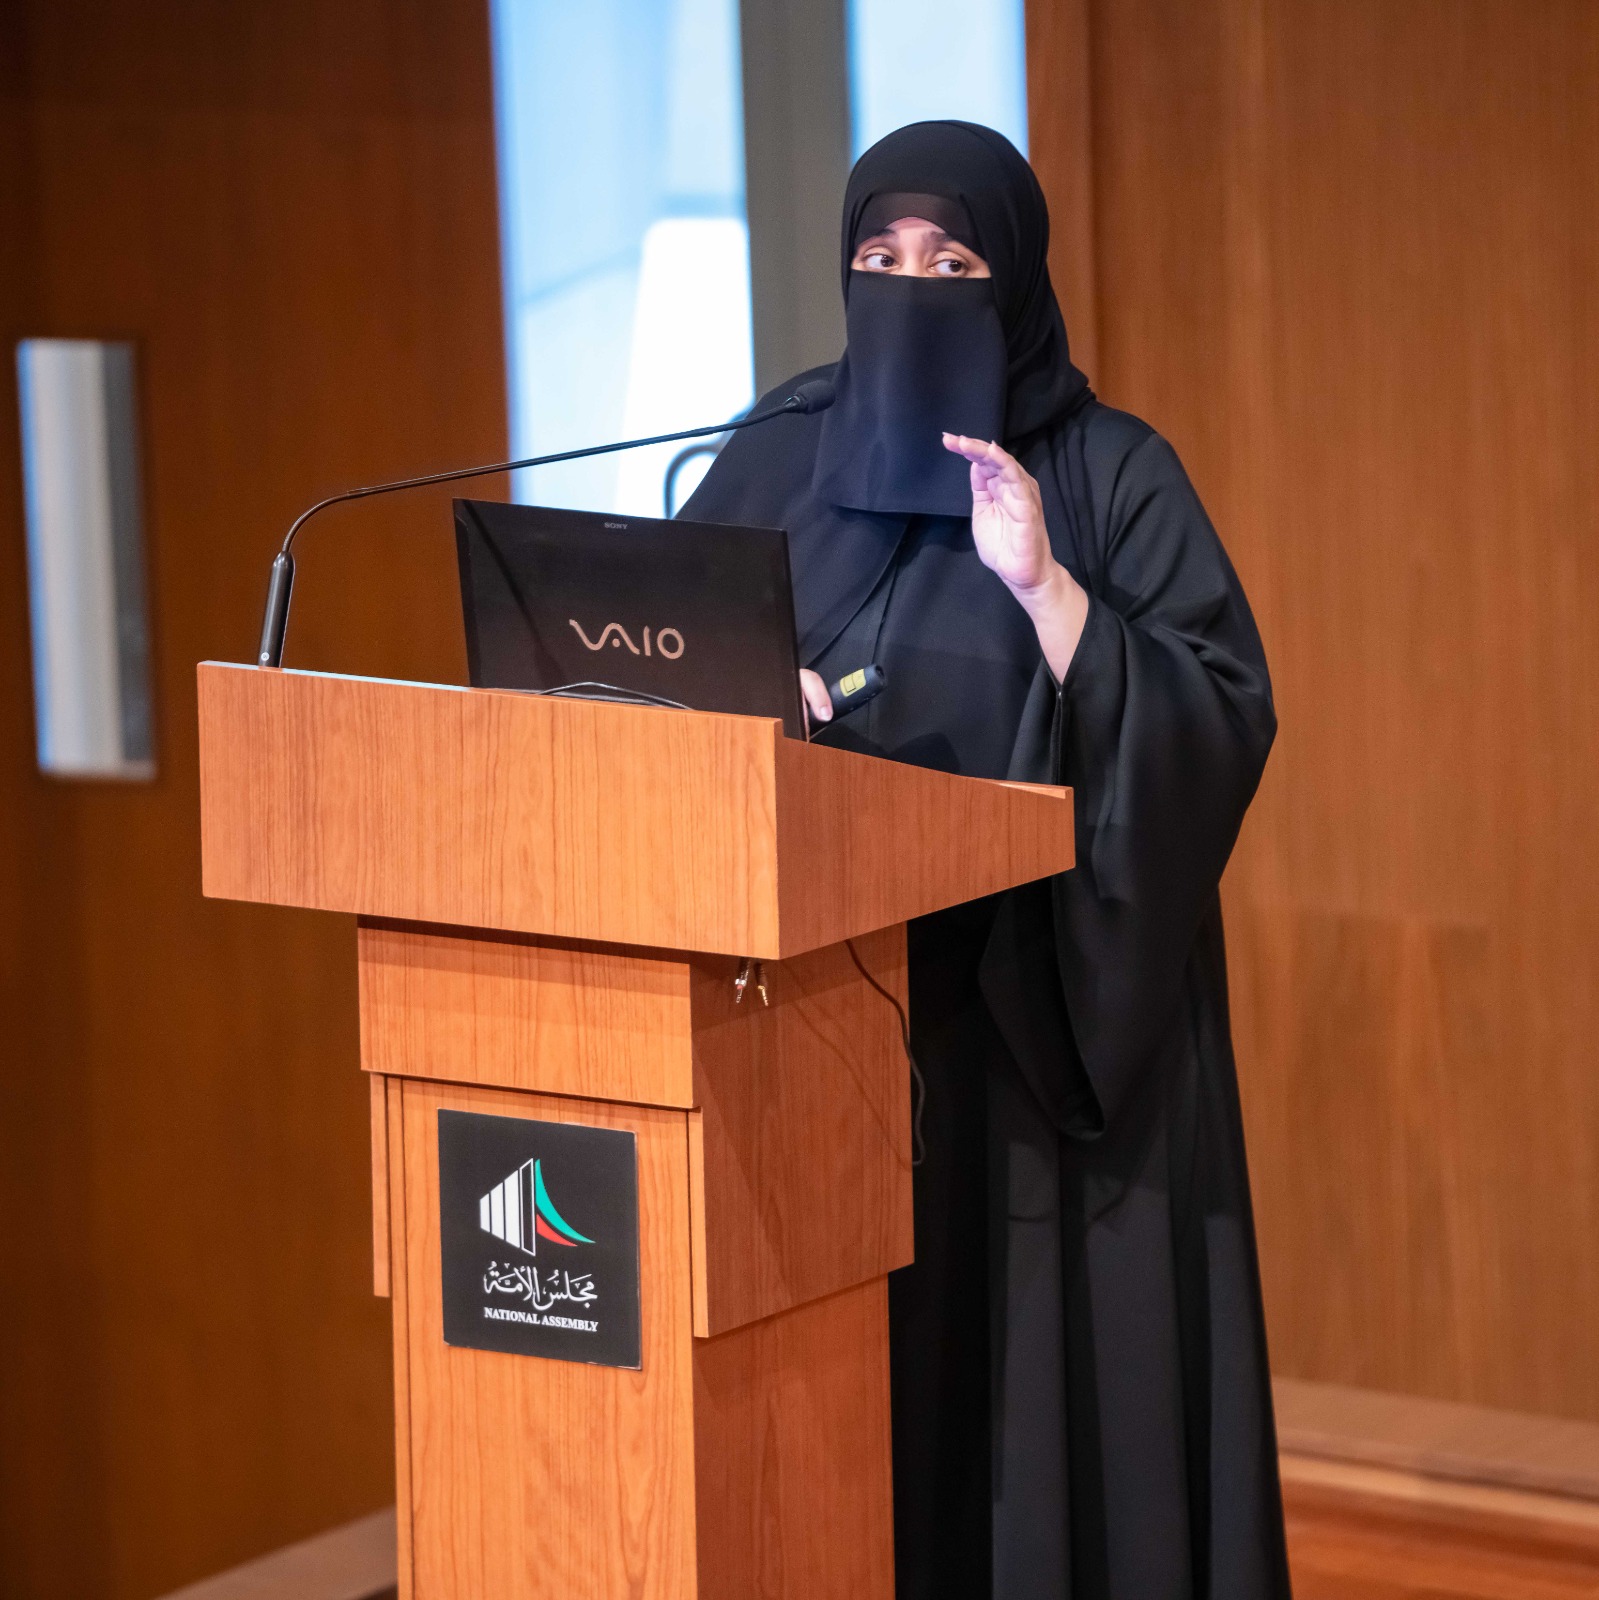  قطاع الموارد البشرية في الأمانة العامة يواصل برنامجه التدريبي لطلبة جامعة الكويت